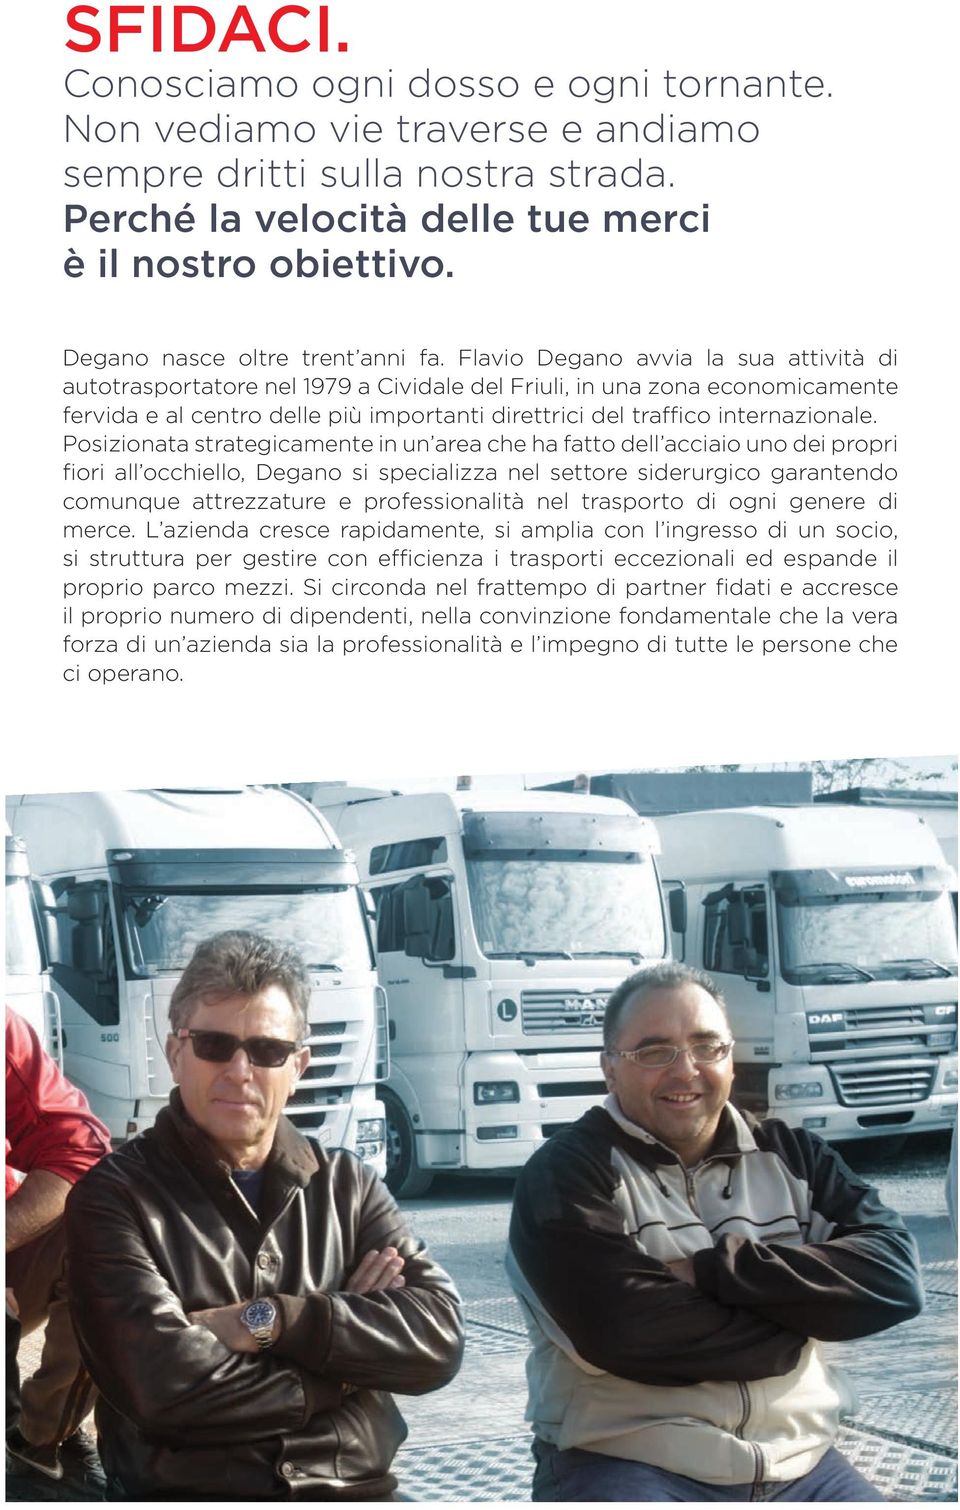 Flavio Degano avvia la sua attività di autotrasportatore nel 1979 a Cividale del Friuli, in una zona economicamente fervida e al centro delle più importanti direttrici del traffico internazionale.